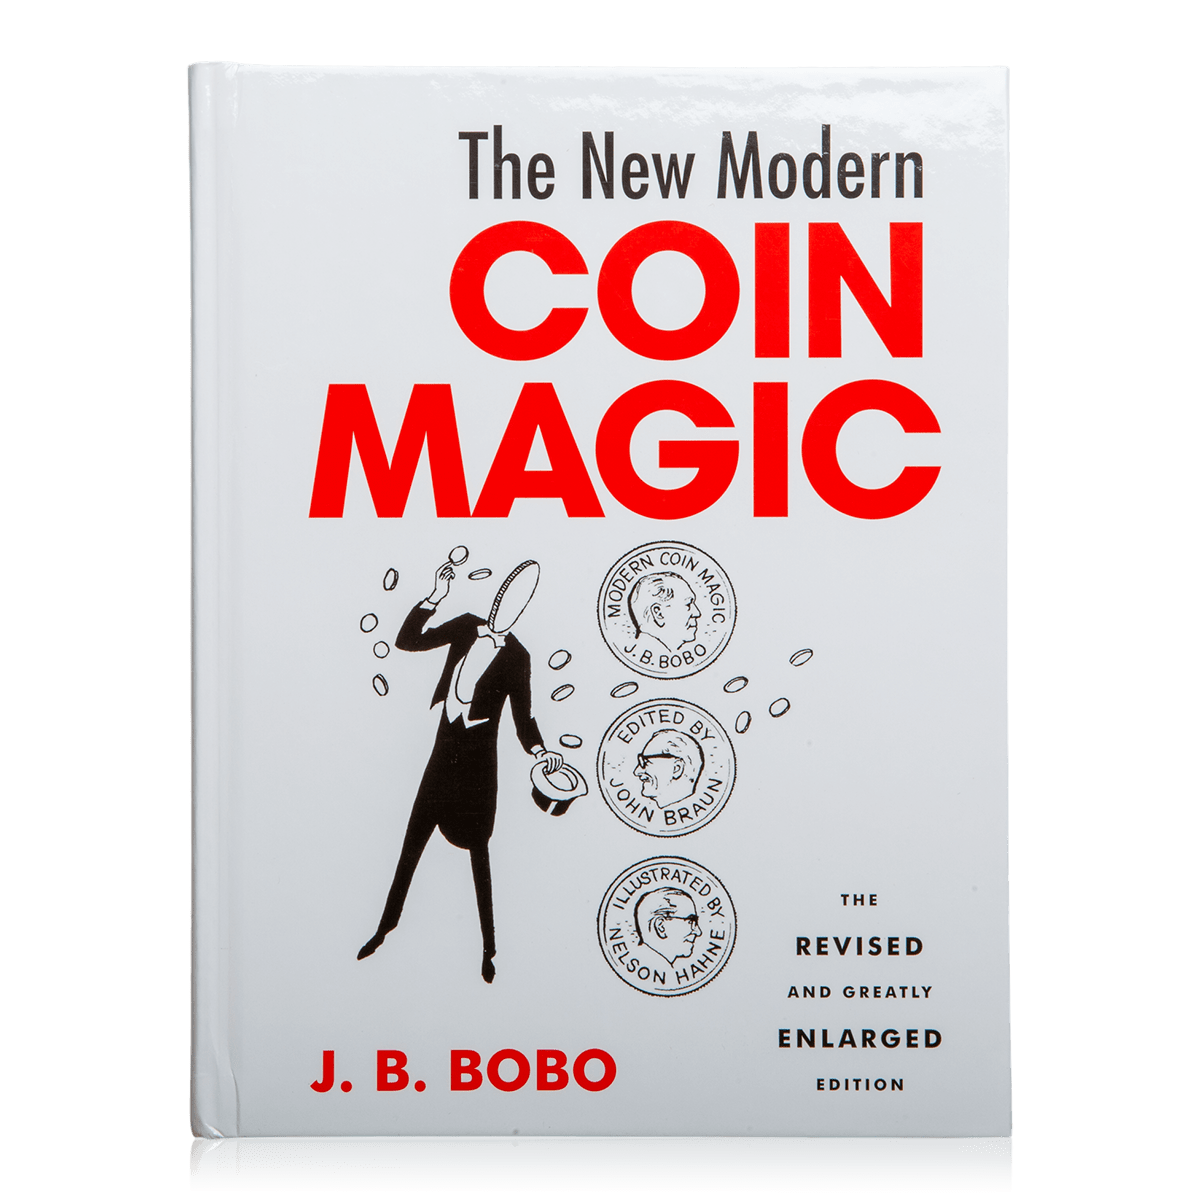 The New Modern Coin Magic